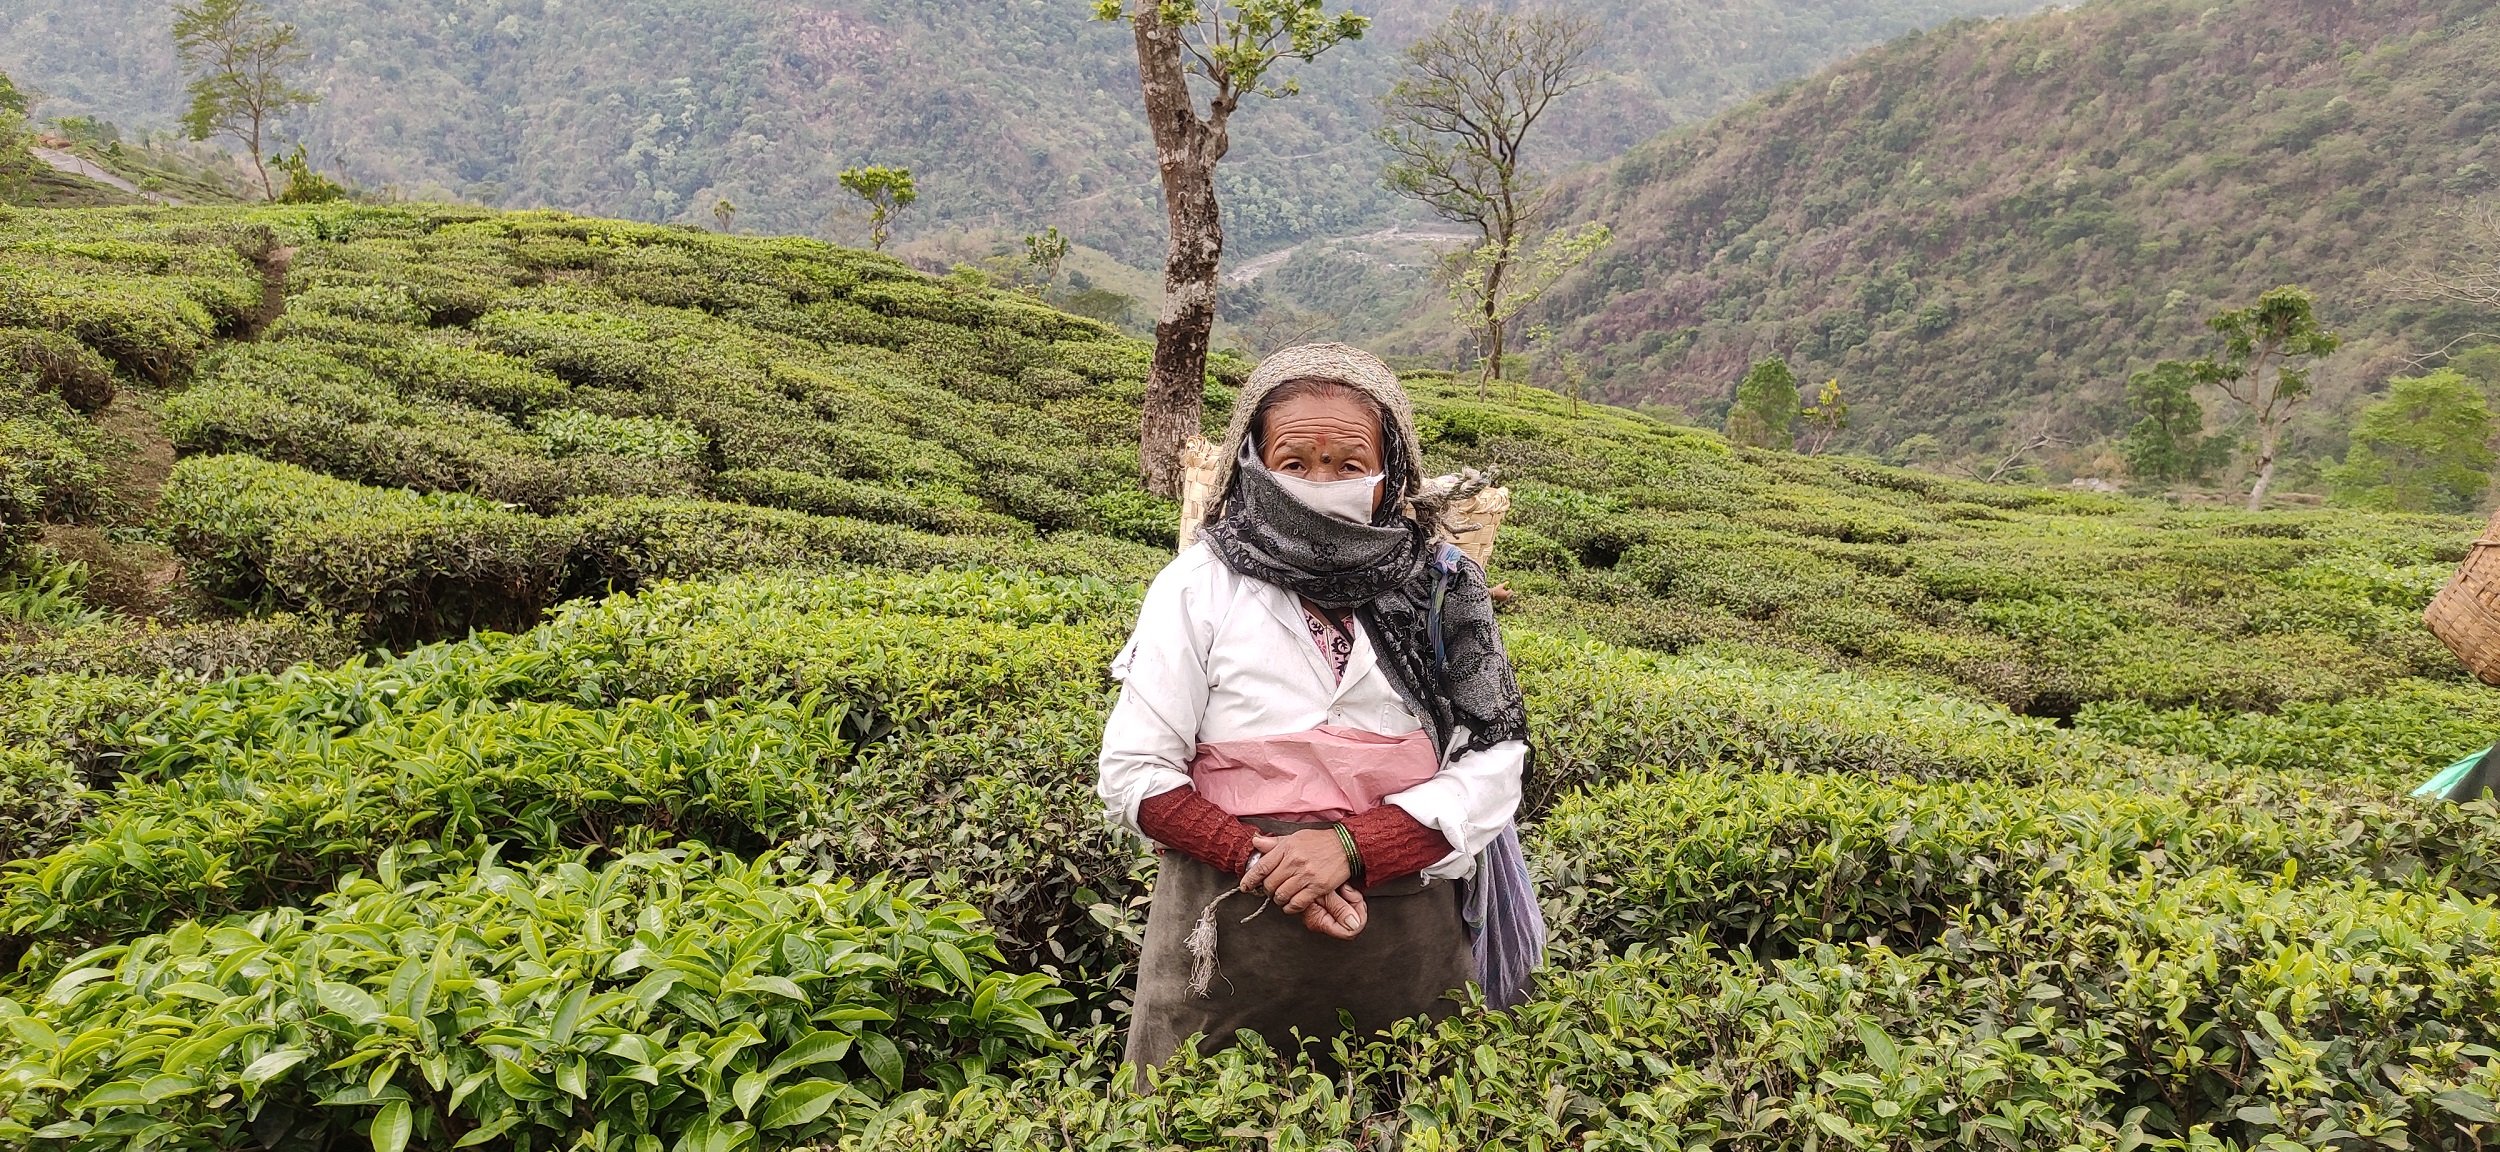 A tea plucker stands among the bushes (image: Gurvinder Singh)